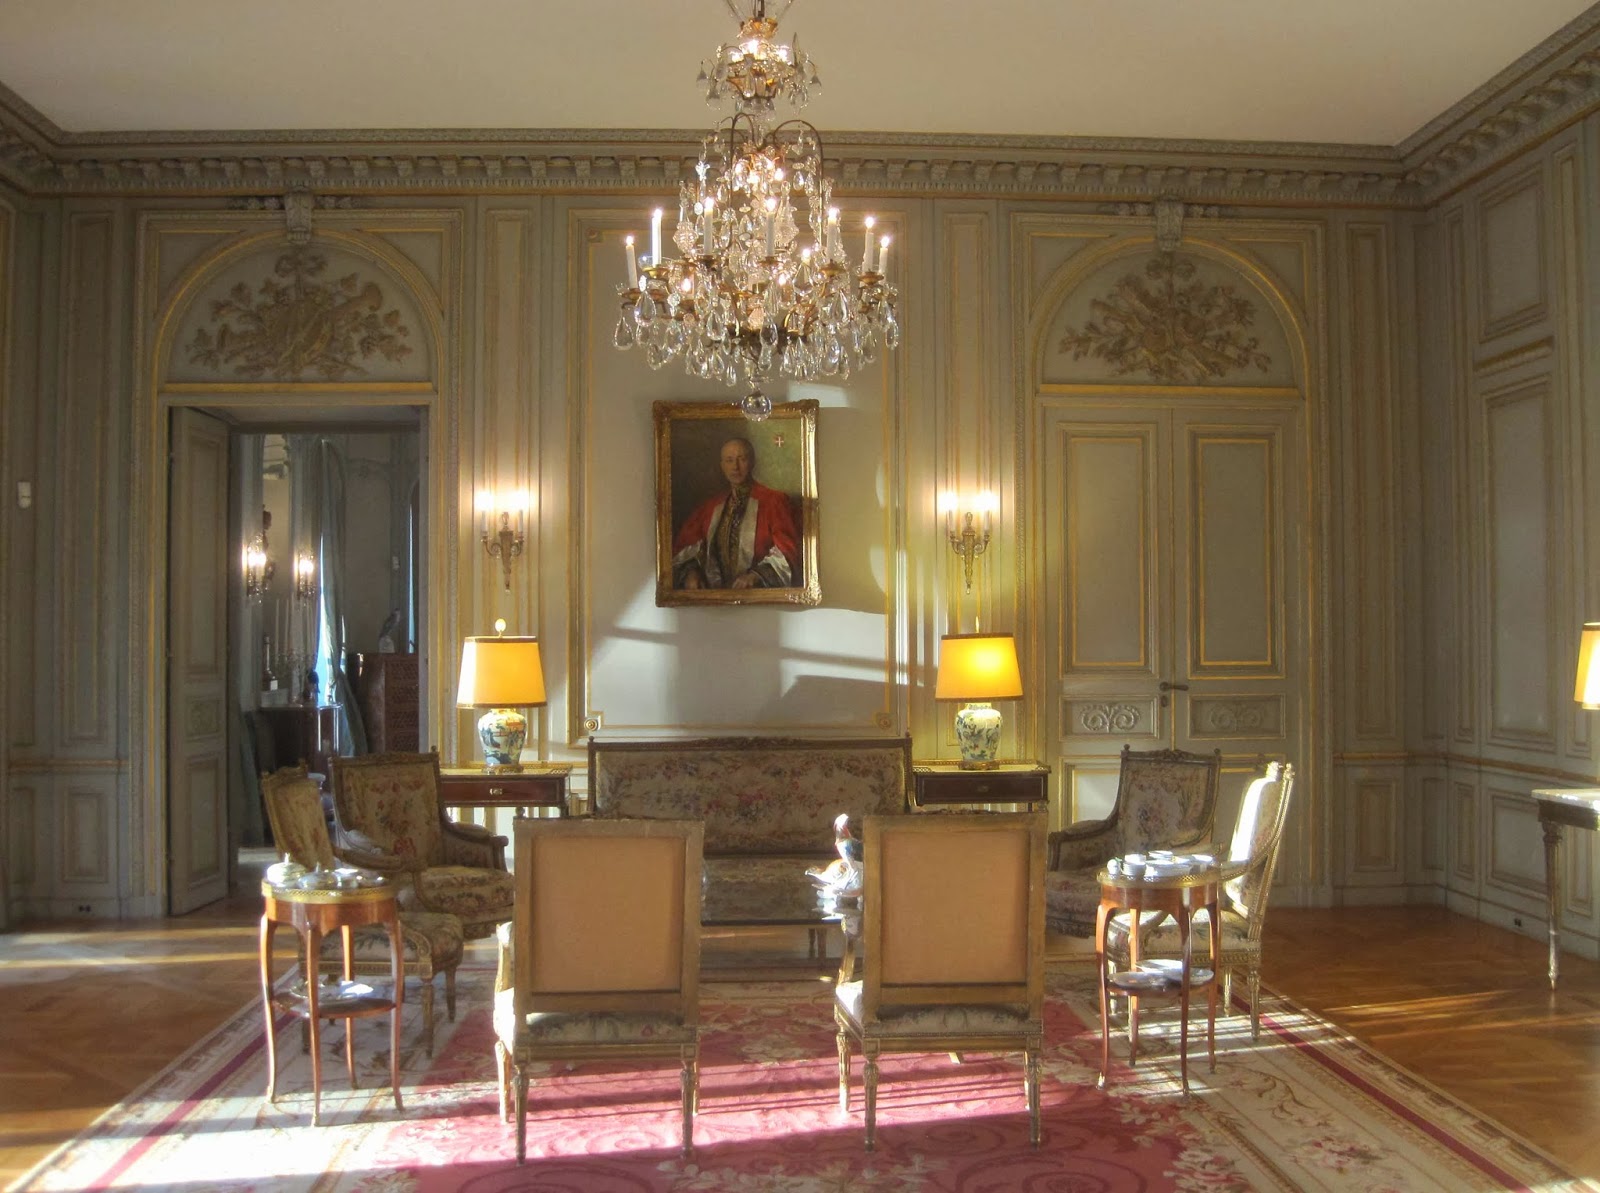 Belgian Ambassadors Residence Interiors 2 Salon Dining Rooms